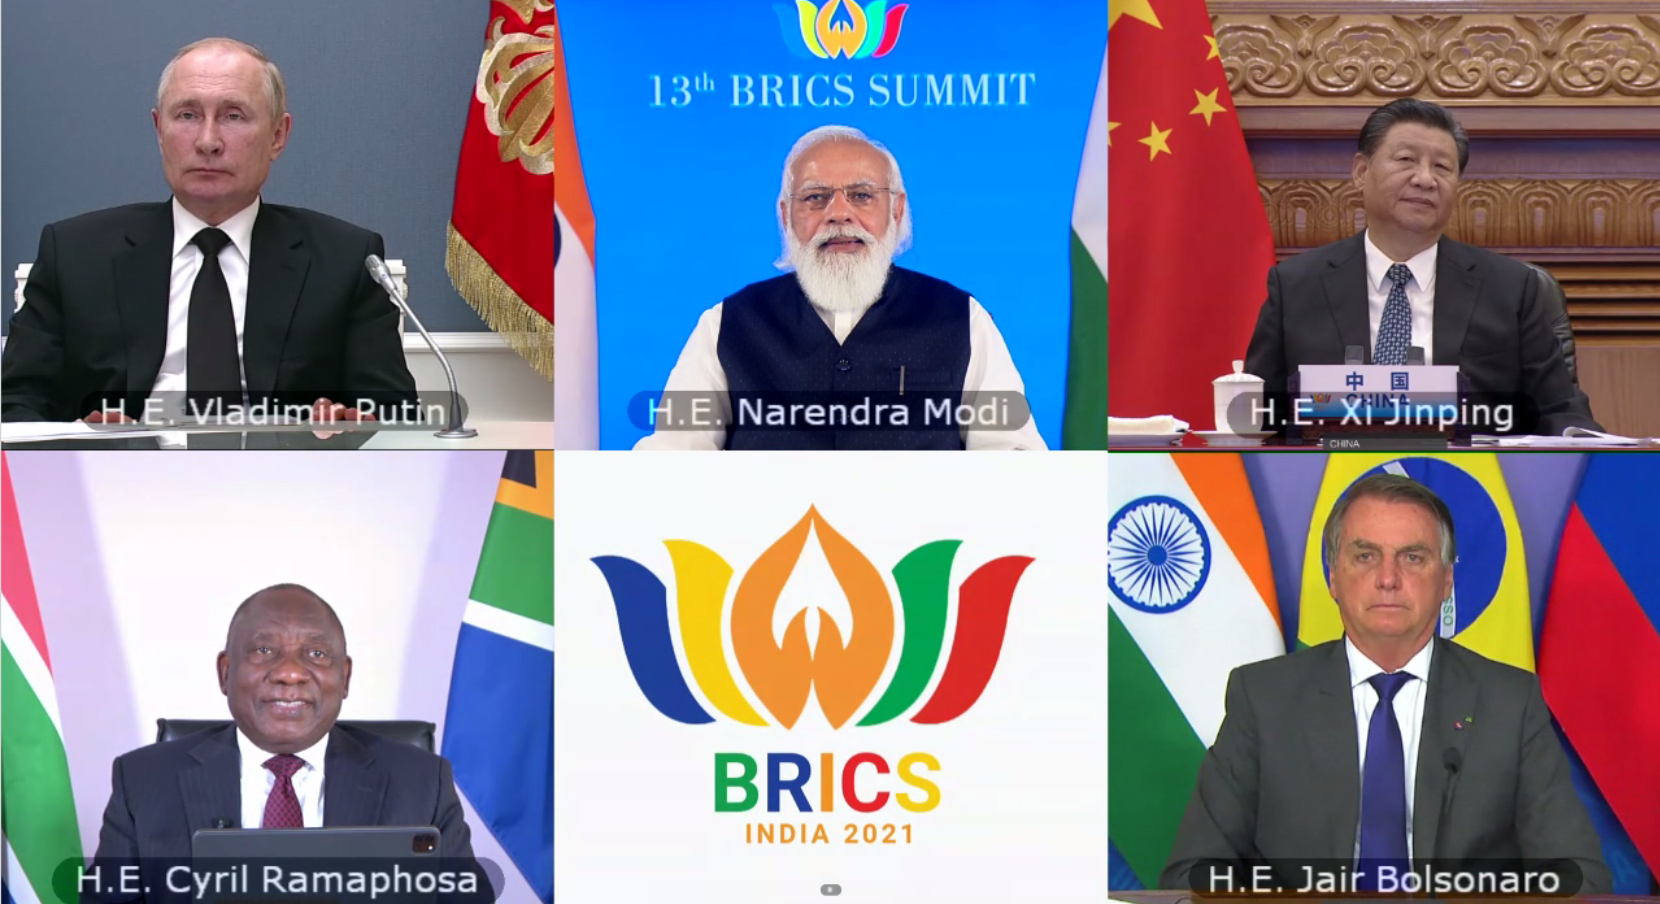 <p>Líderes de los países BRICS participan en la 13a cumbre anual a pesar de las tensiones diplomáticas dentro del grupo (imagen: Alamy)</p>